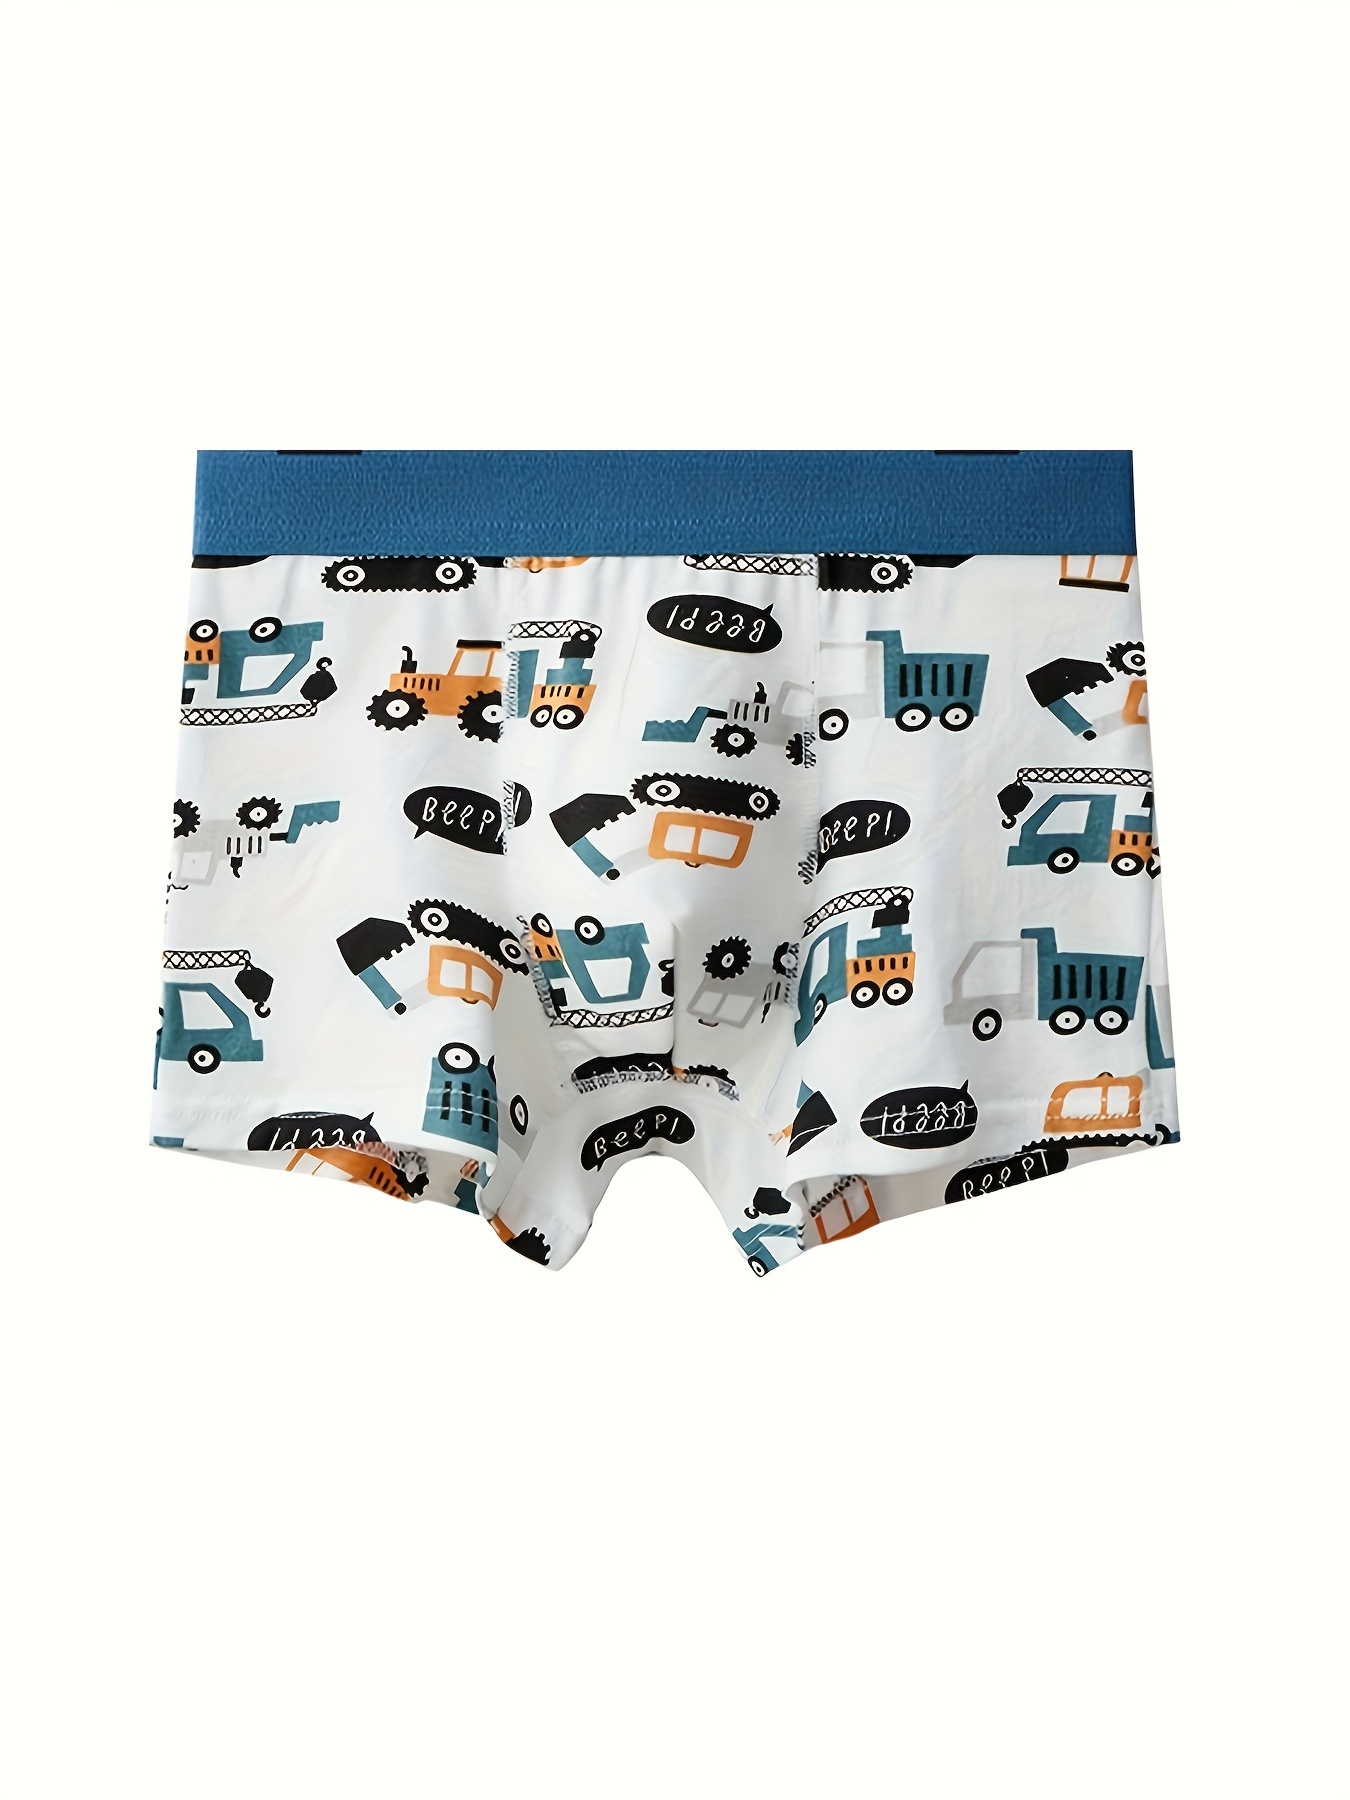 Children's Underwear Boy Panties Underpants Engineering Vehicle